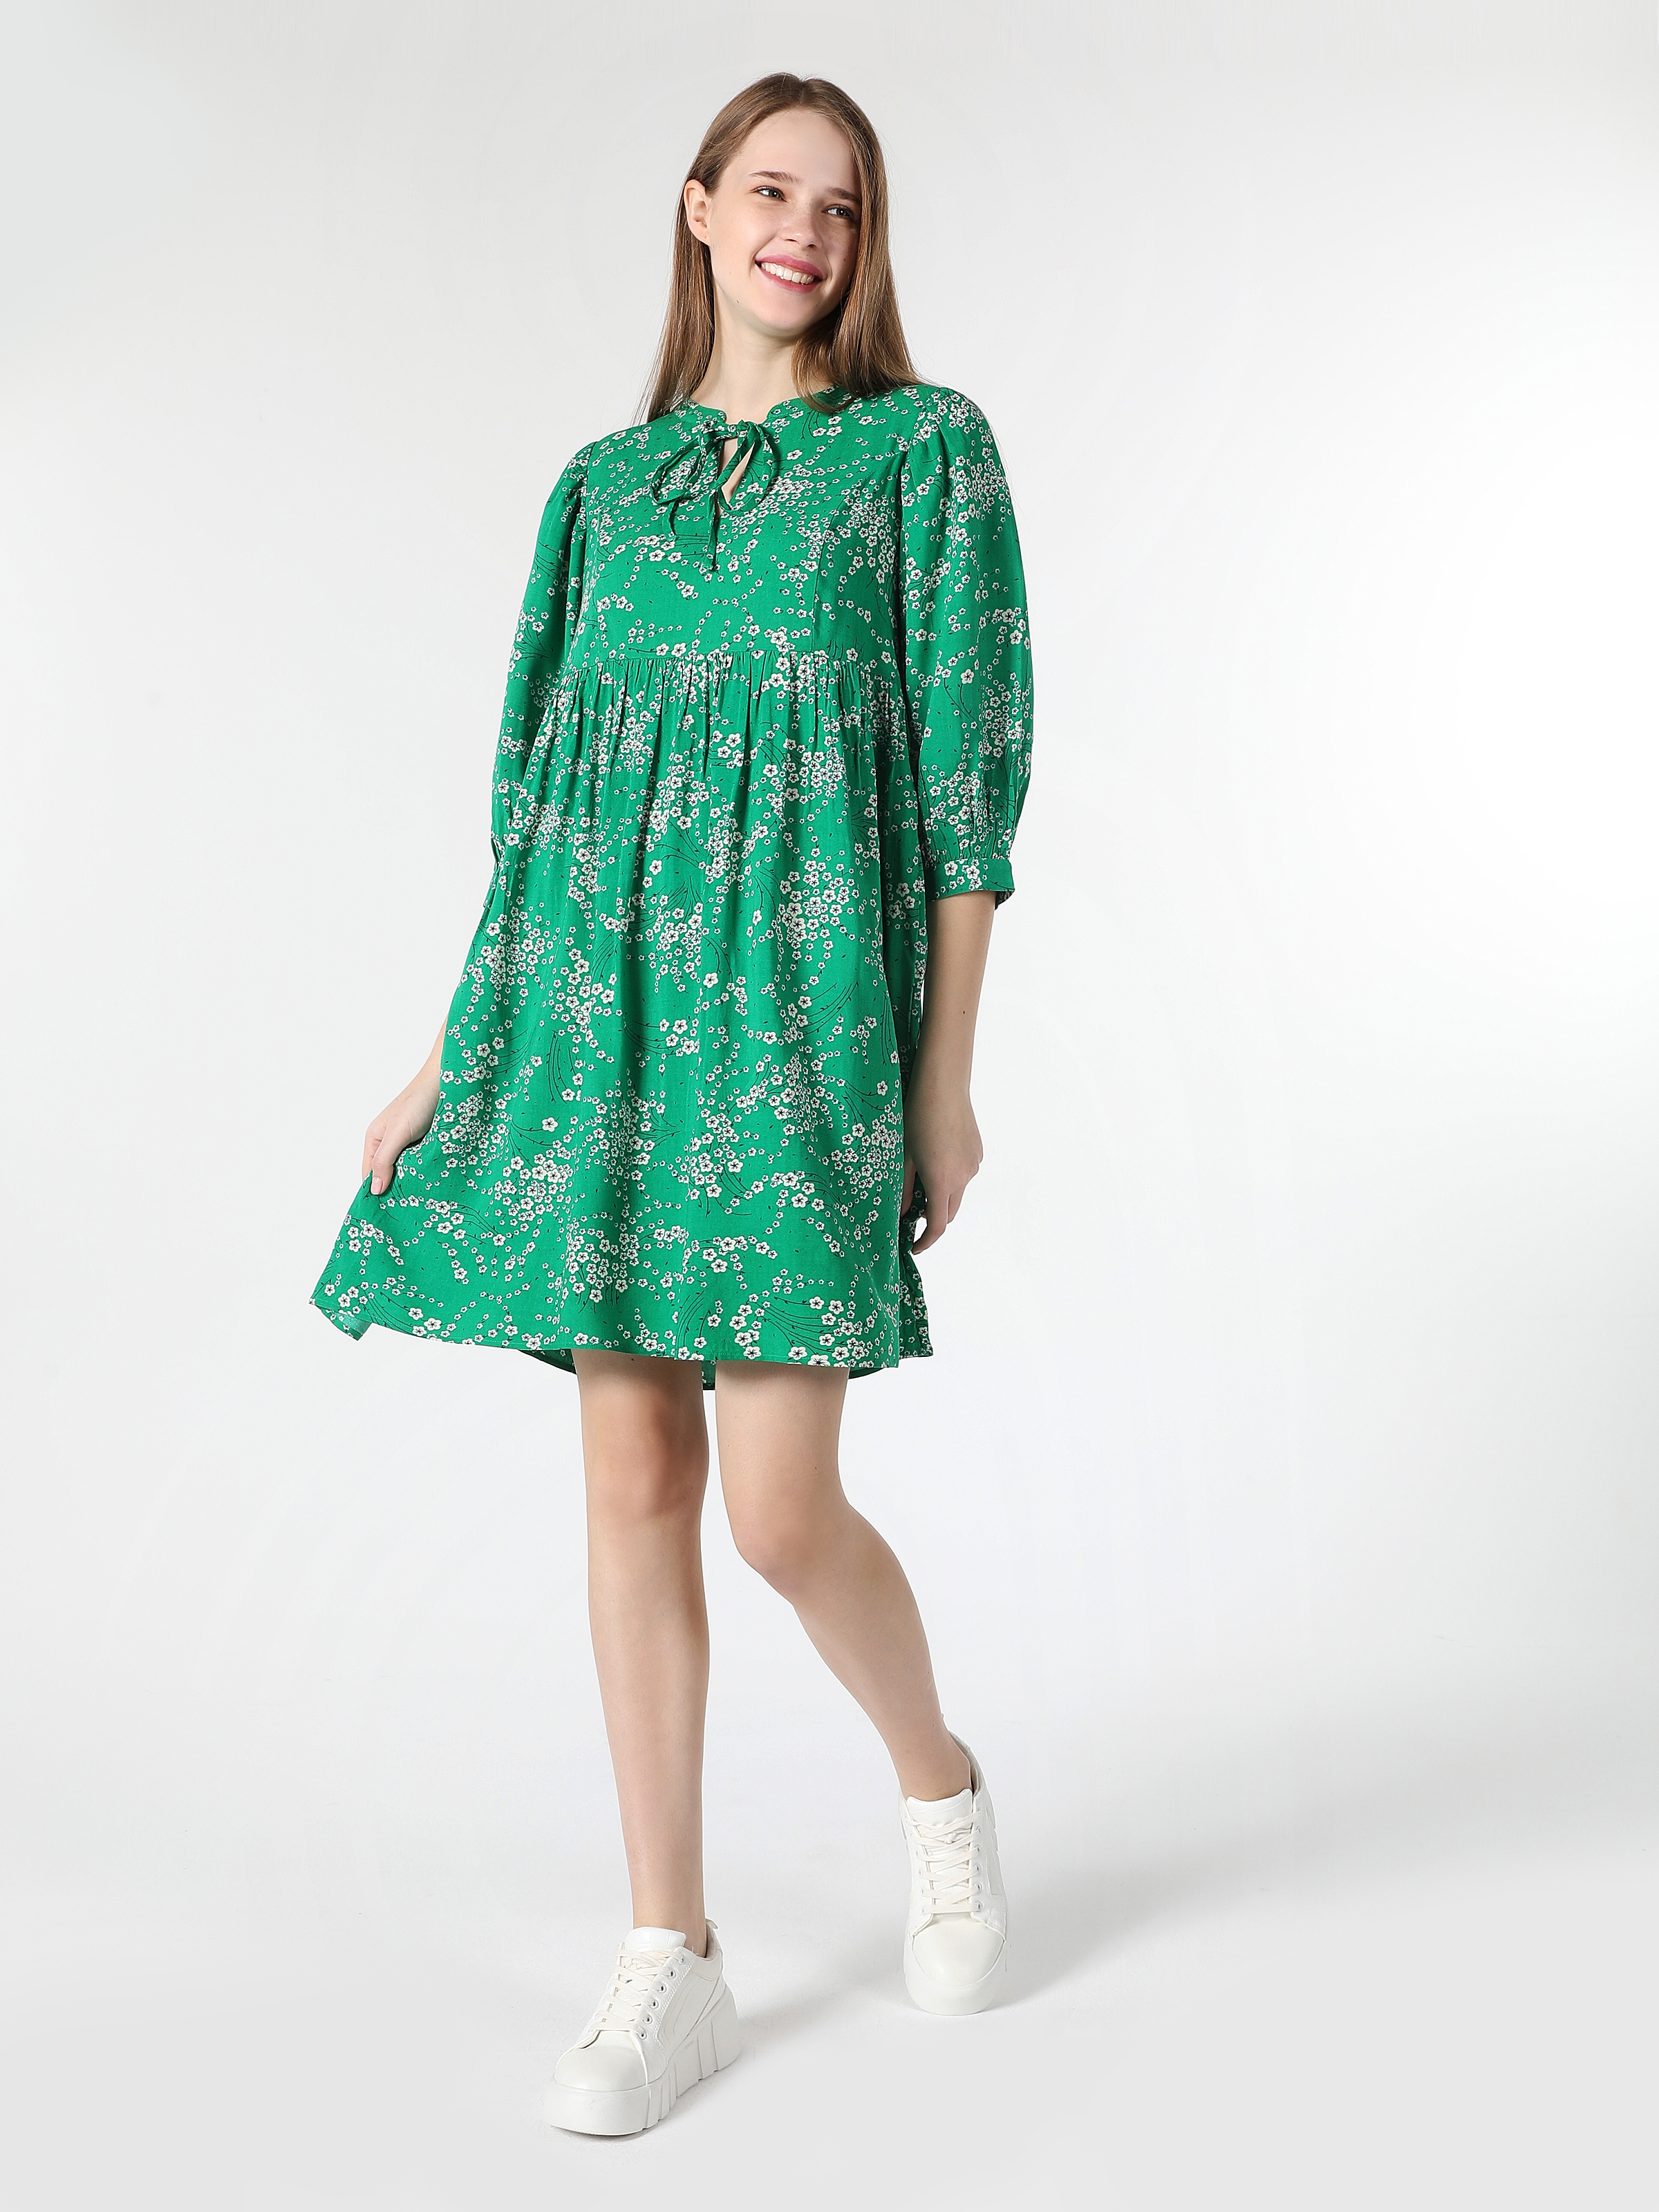 Показати інформацію про Сукня Жіноча Зелена З Квітковим Принтом Класичного Крою Cl1061886